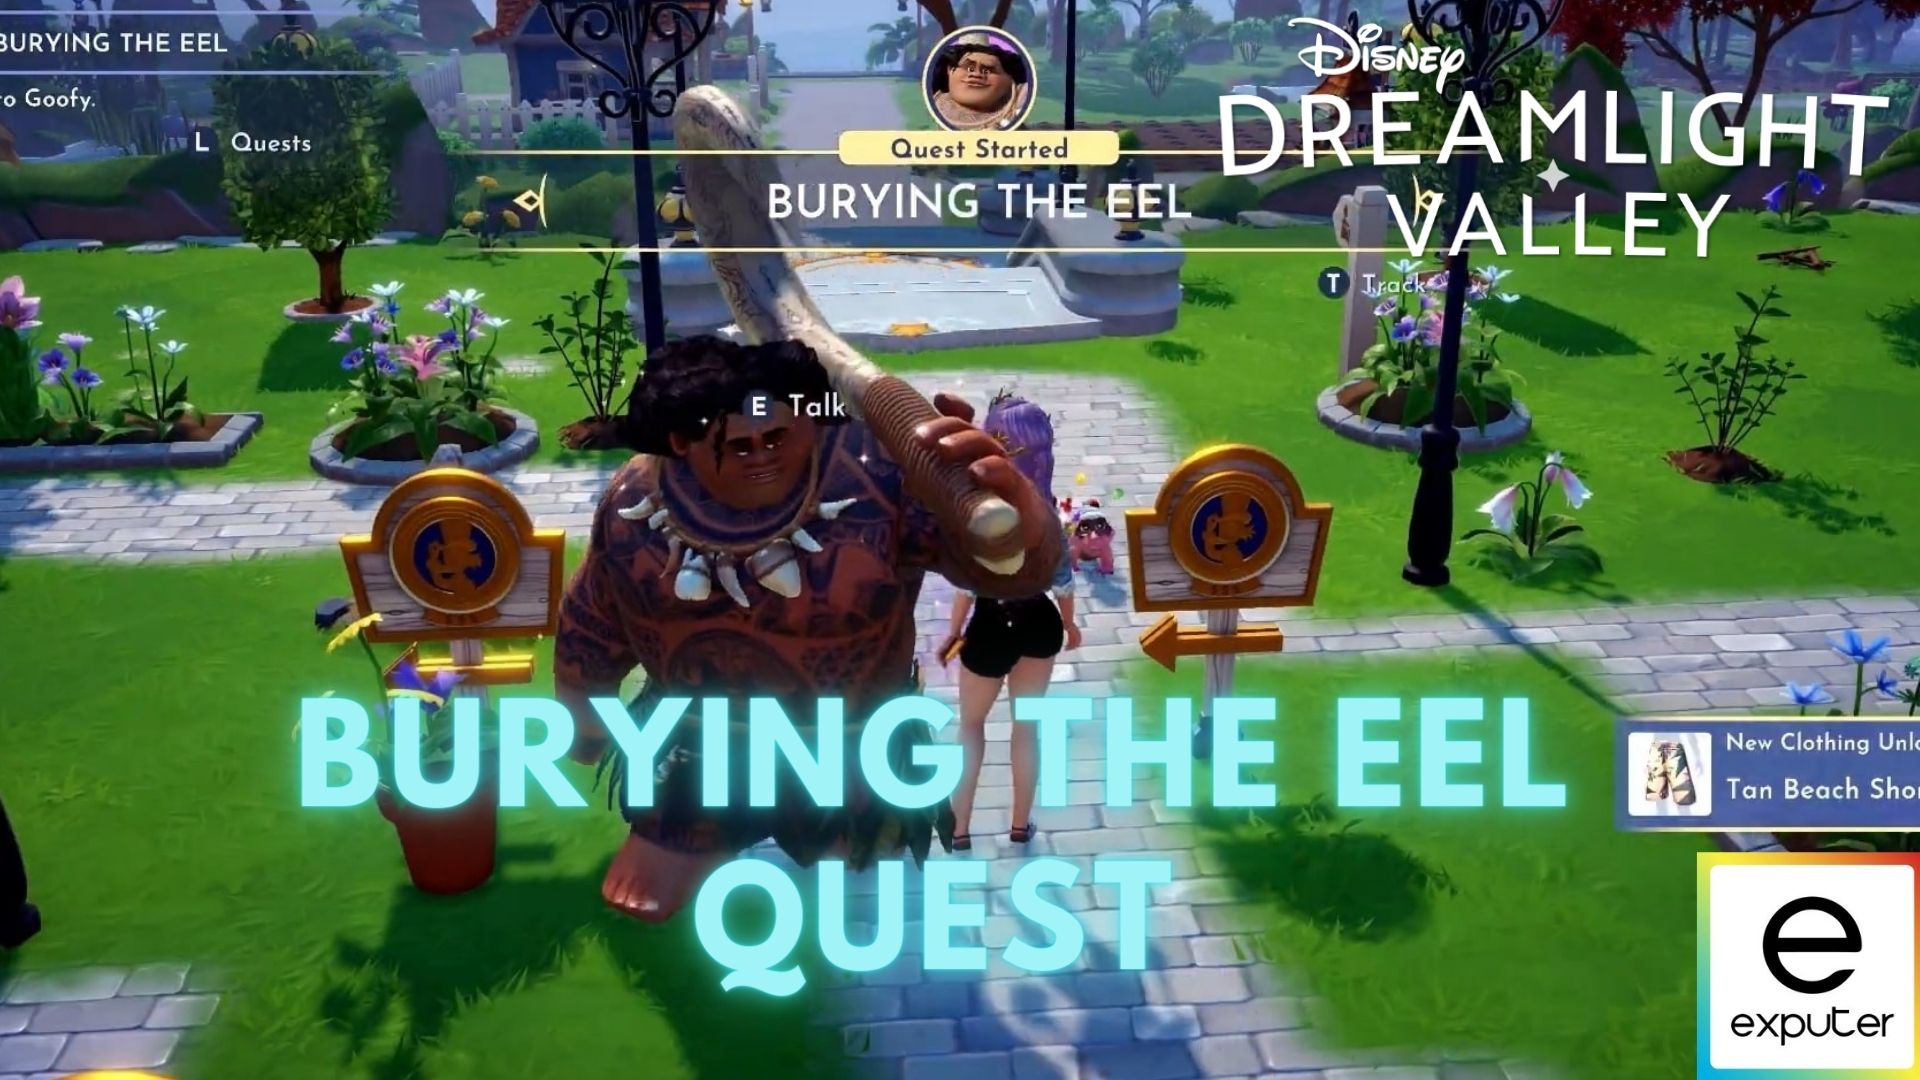 Burying The Eel Quest in Disney Dreamlight Valley